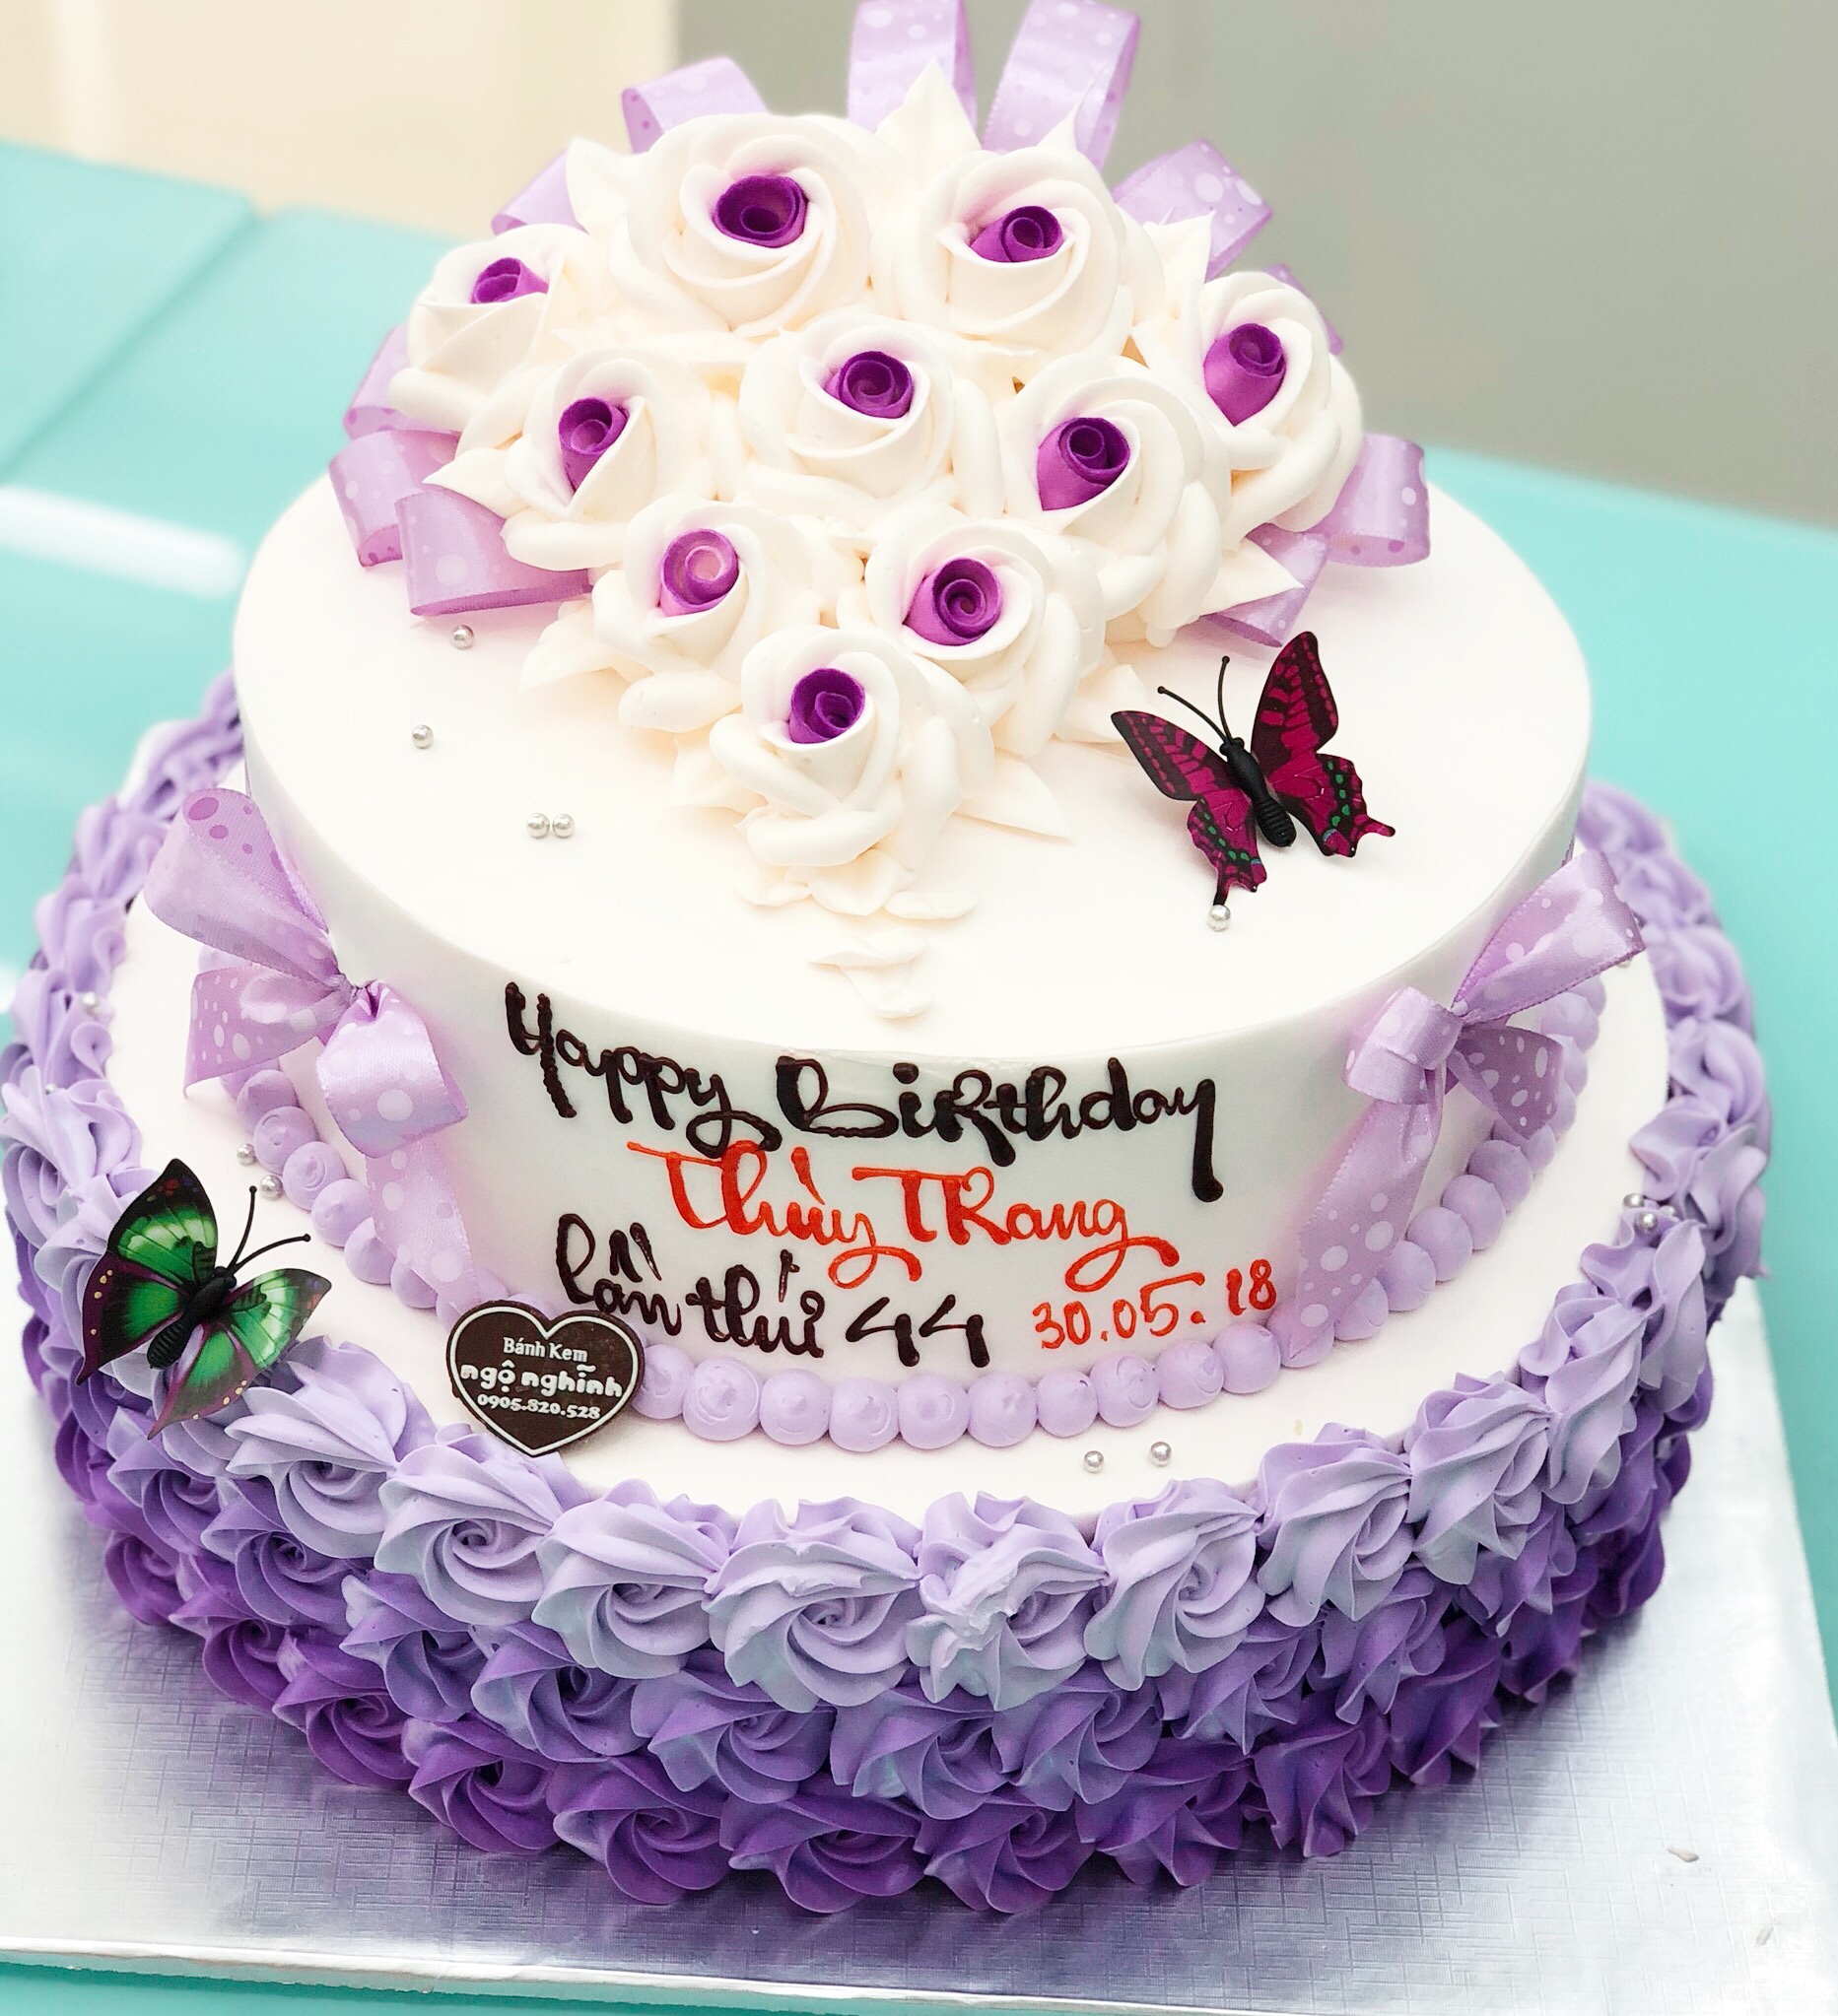 Đón sinh nhật của người thân bằng một chiếc bánh được tạo hình hoa hồng màu tím ngọt ngào chắc chắn sẽ khiến cho bữa tiệc của bạn thêm phần đặc biệt và ý nghĩa. Hãy cùng chiêm ngưỡng hình ảnh của chiếc bánh tuyệt đẹp này để cảm nhận được sự độc đáo và tinh tế.